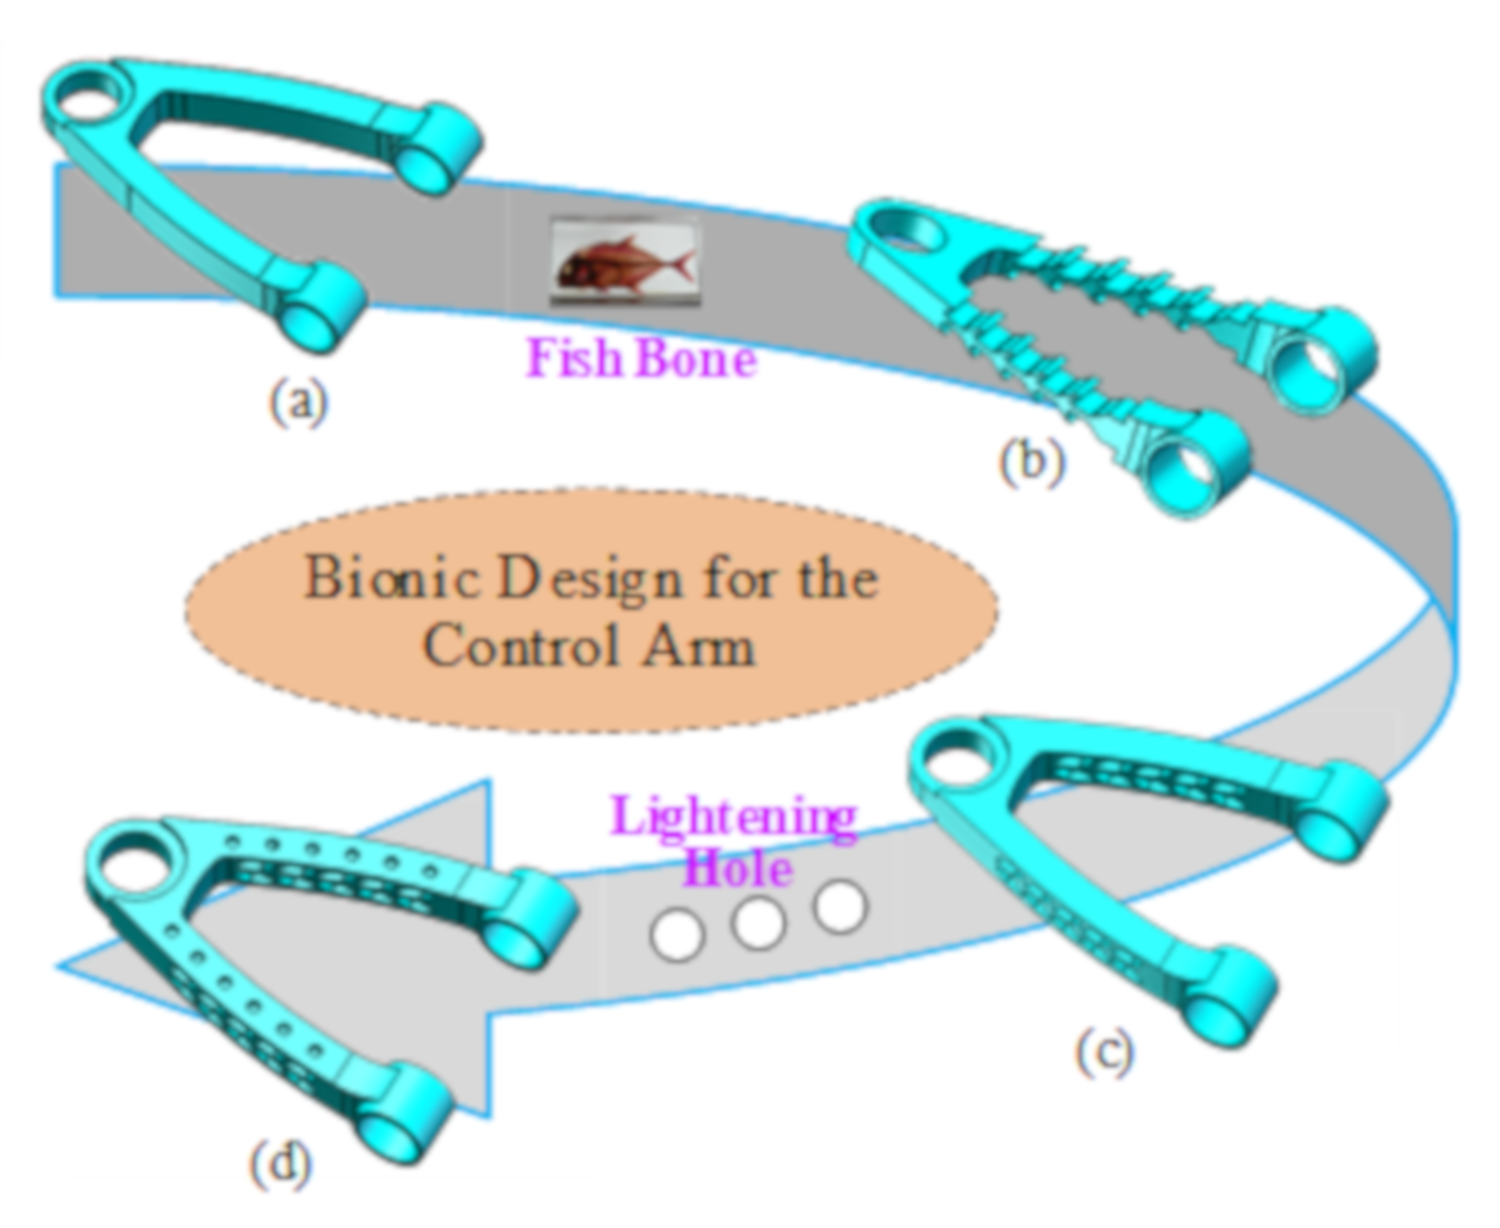 bionics design